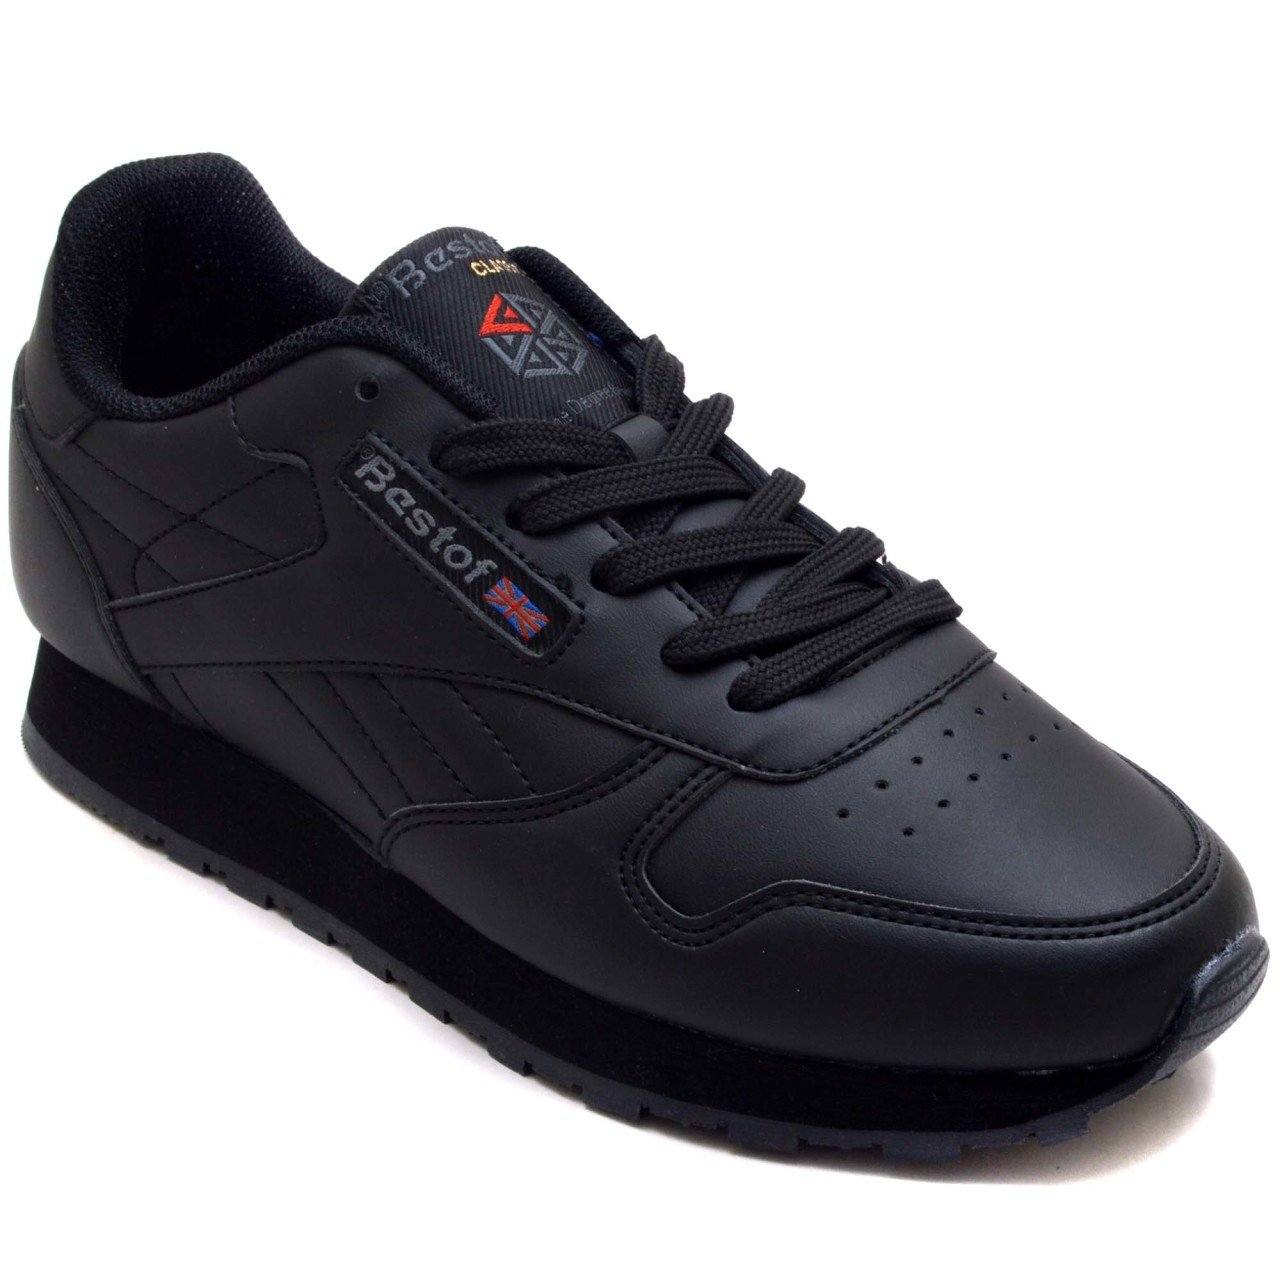 968-BST Spor Model Kalın Kadın Spor Ayakkabı - Siyah/S